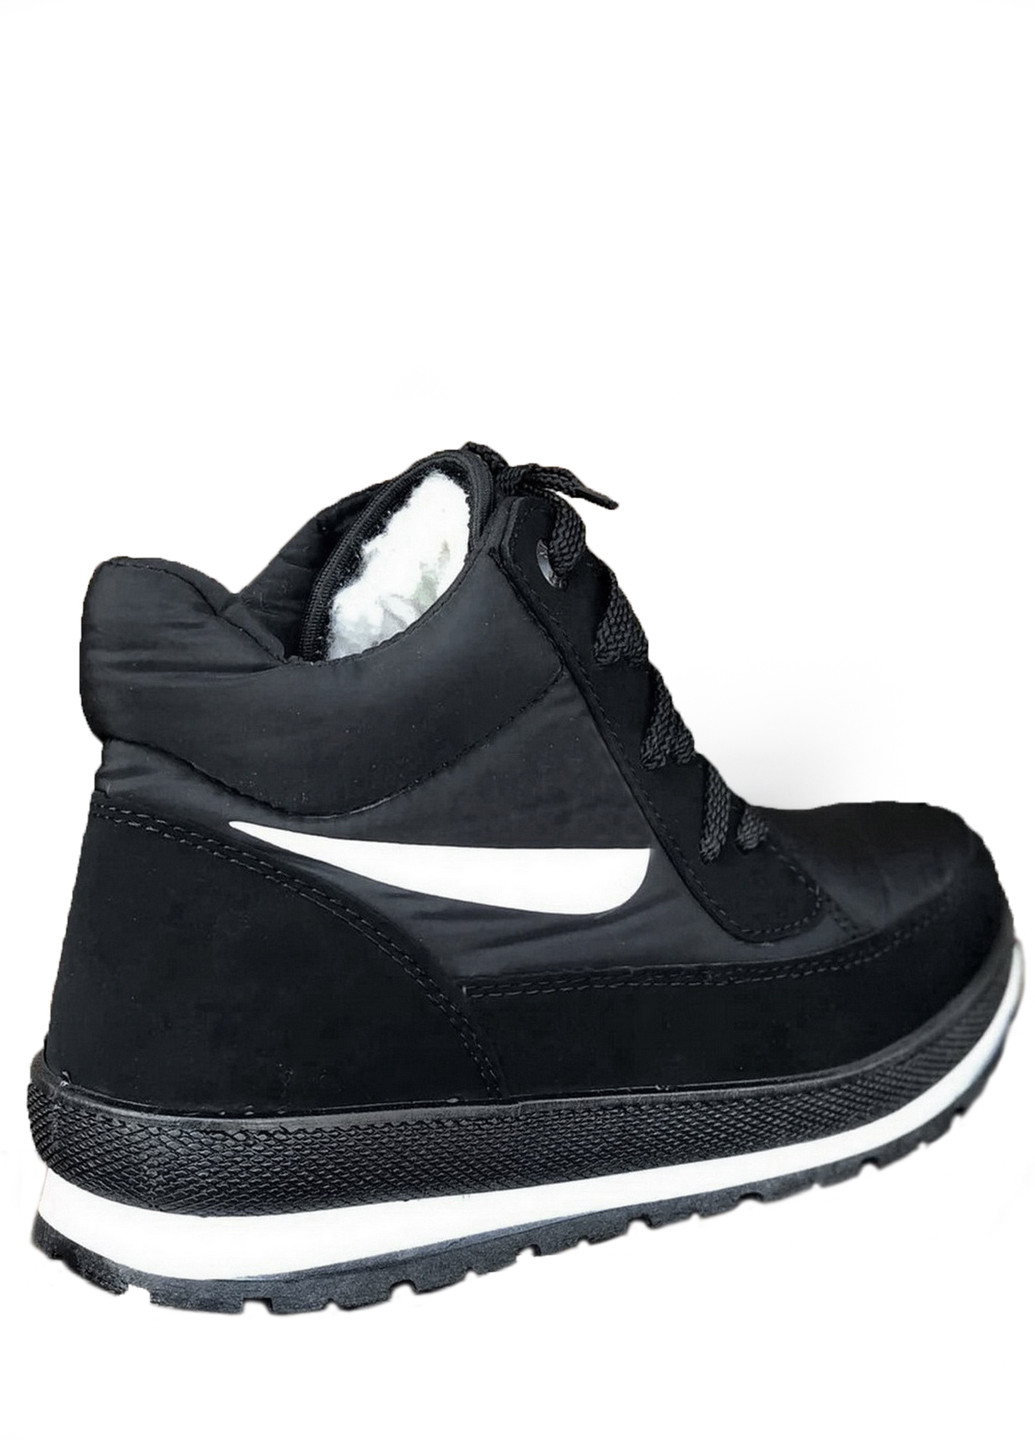 Зимние ботинки женские зимние черные (1283509487) хайкеры Bromen из искусственного нубука, тканевые